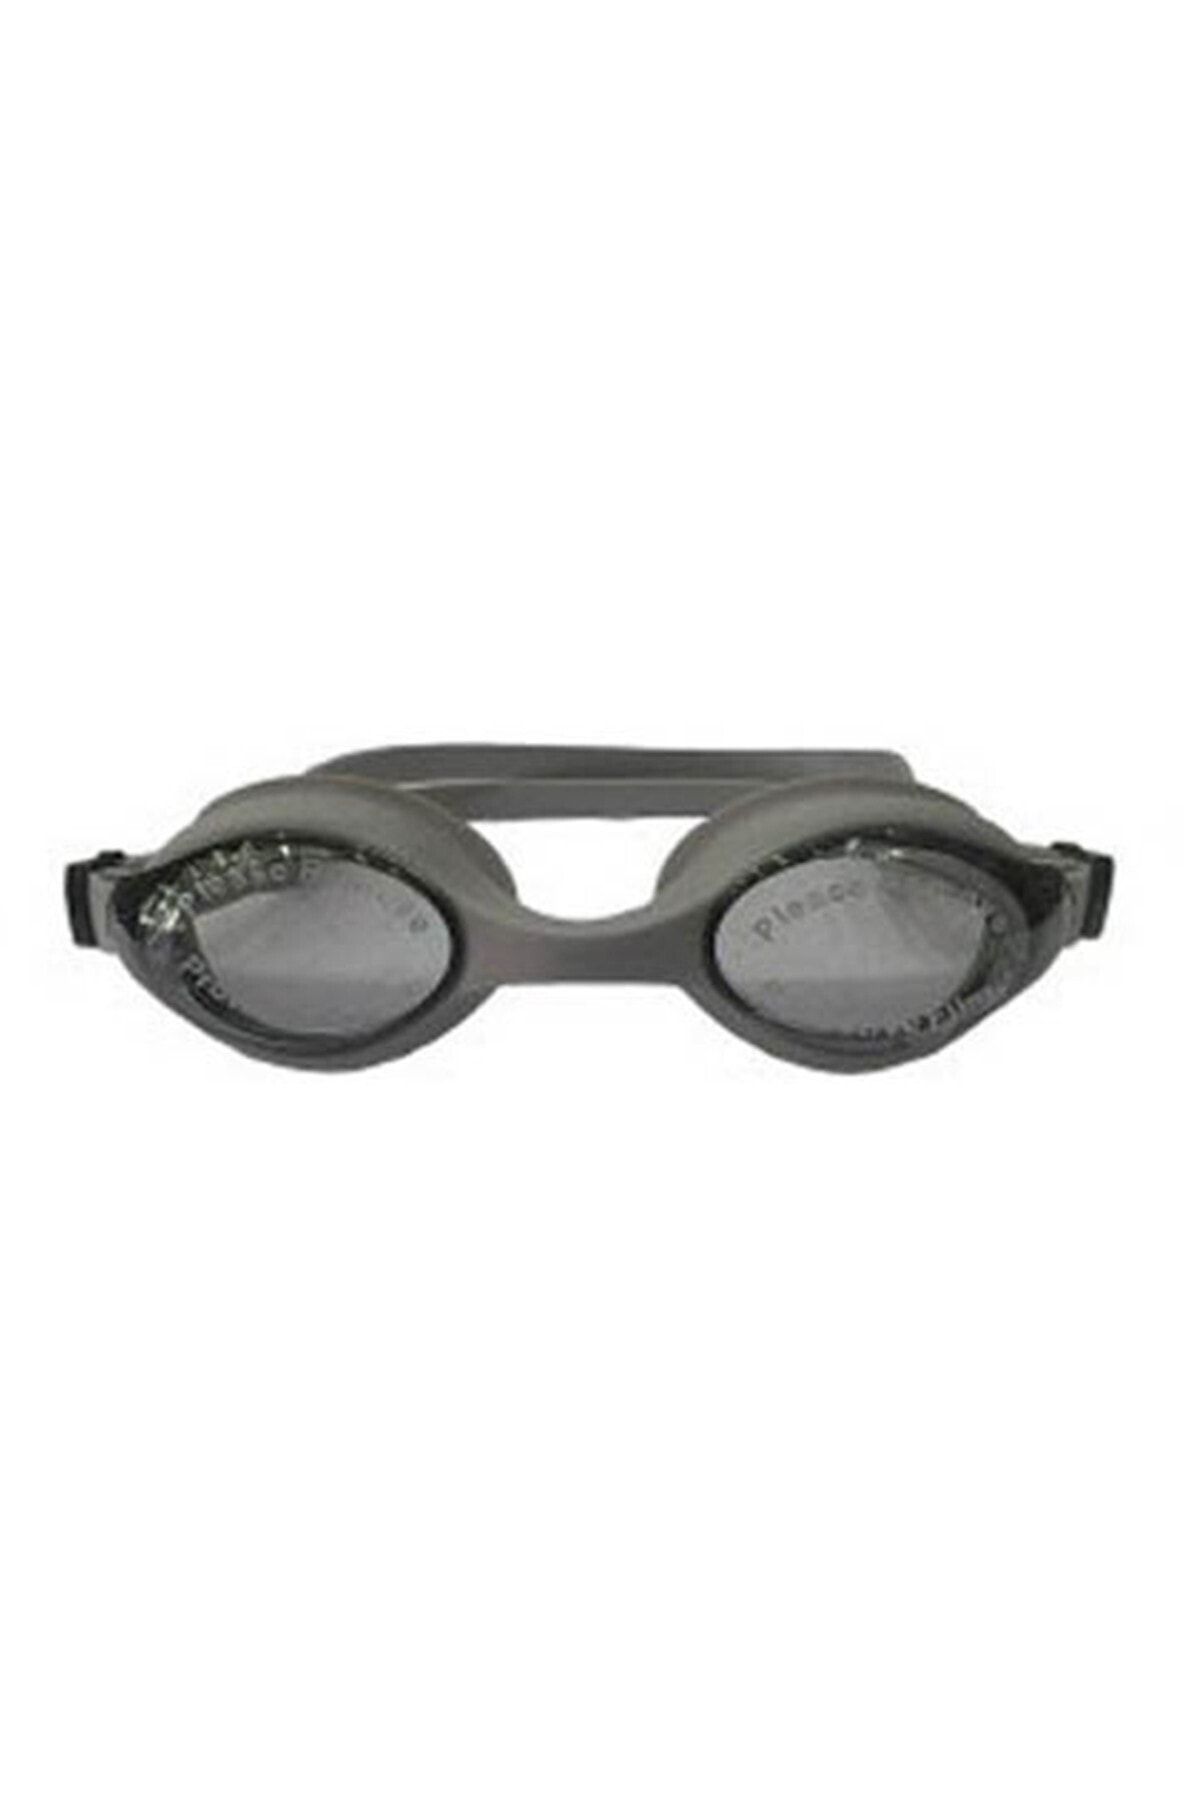 SELEX Sg 2300 Yüzücü Gözlüğü Smoke-sılver Silikon & Antifog